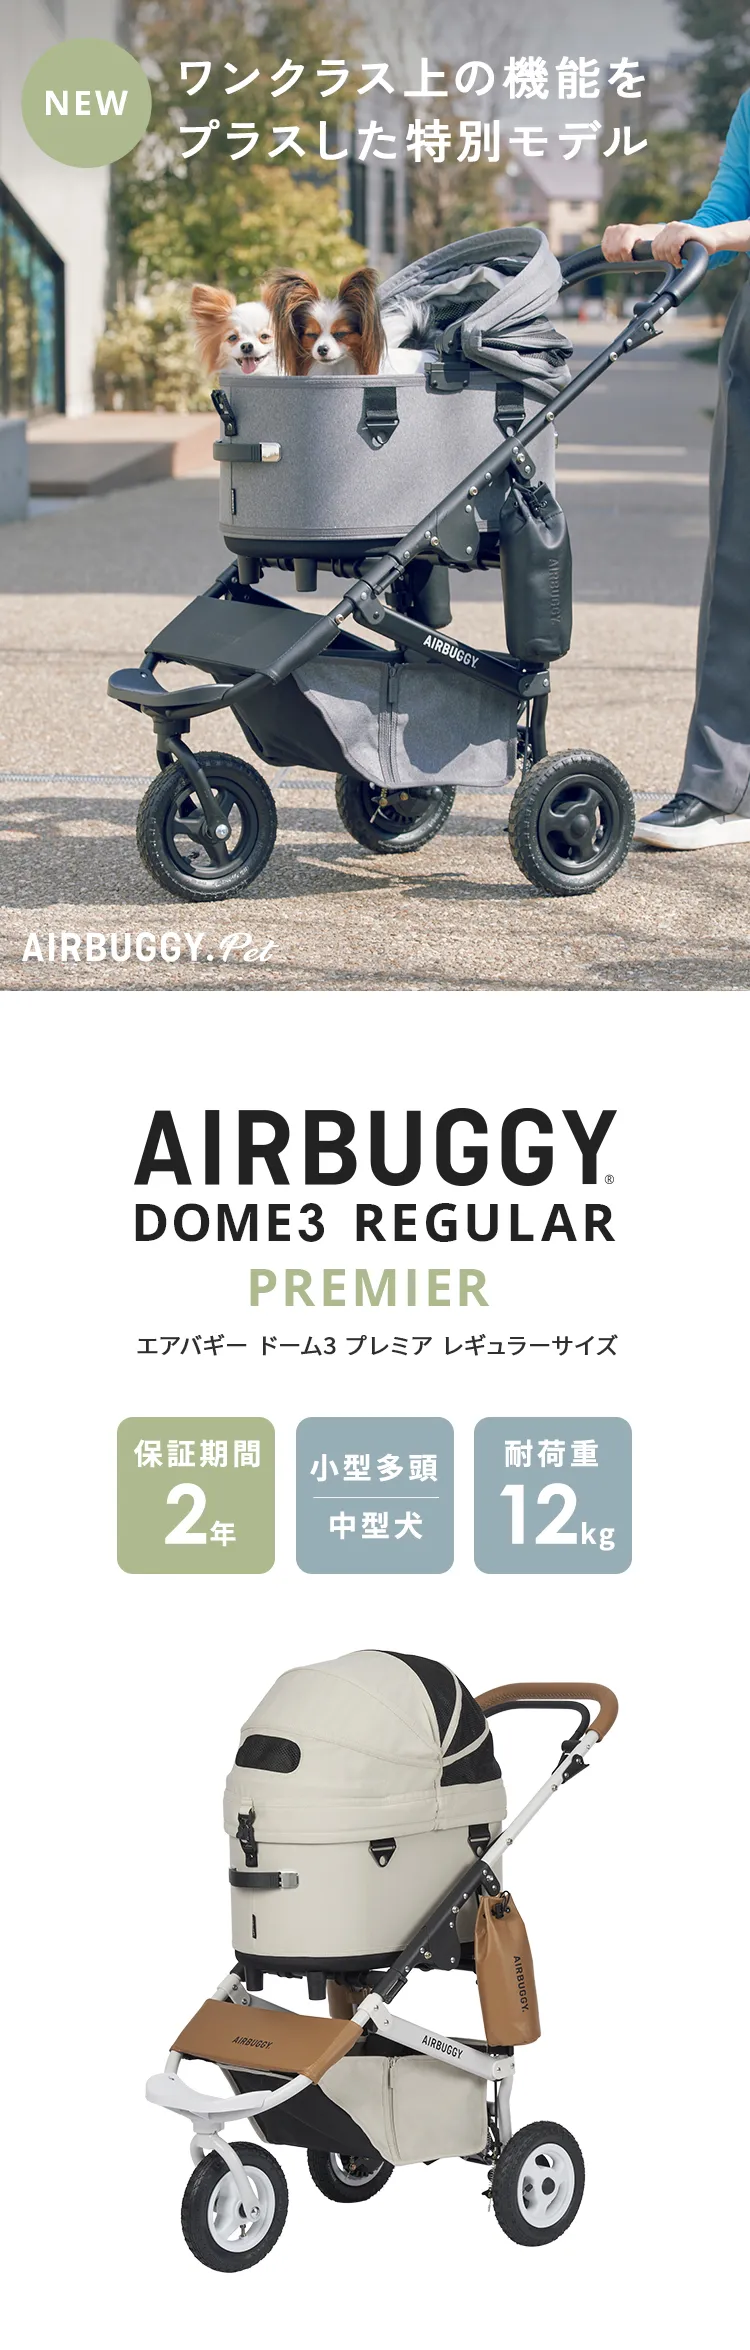 エアバギー ドーム3 プレミアモデル レギュラーペットカート